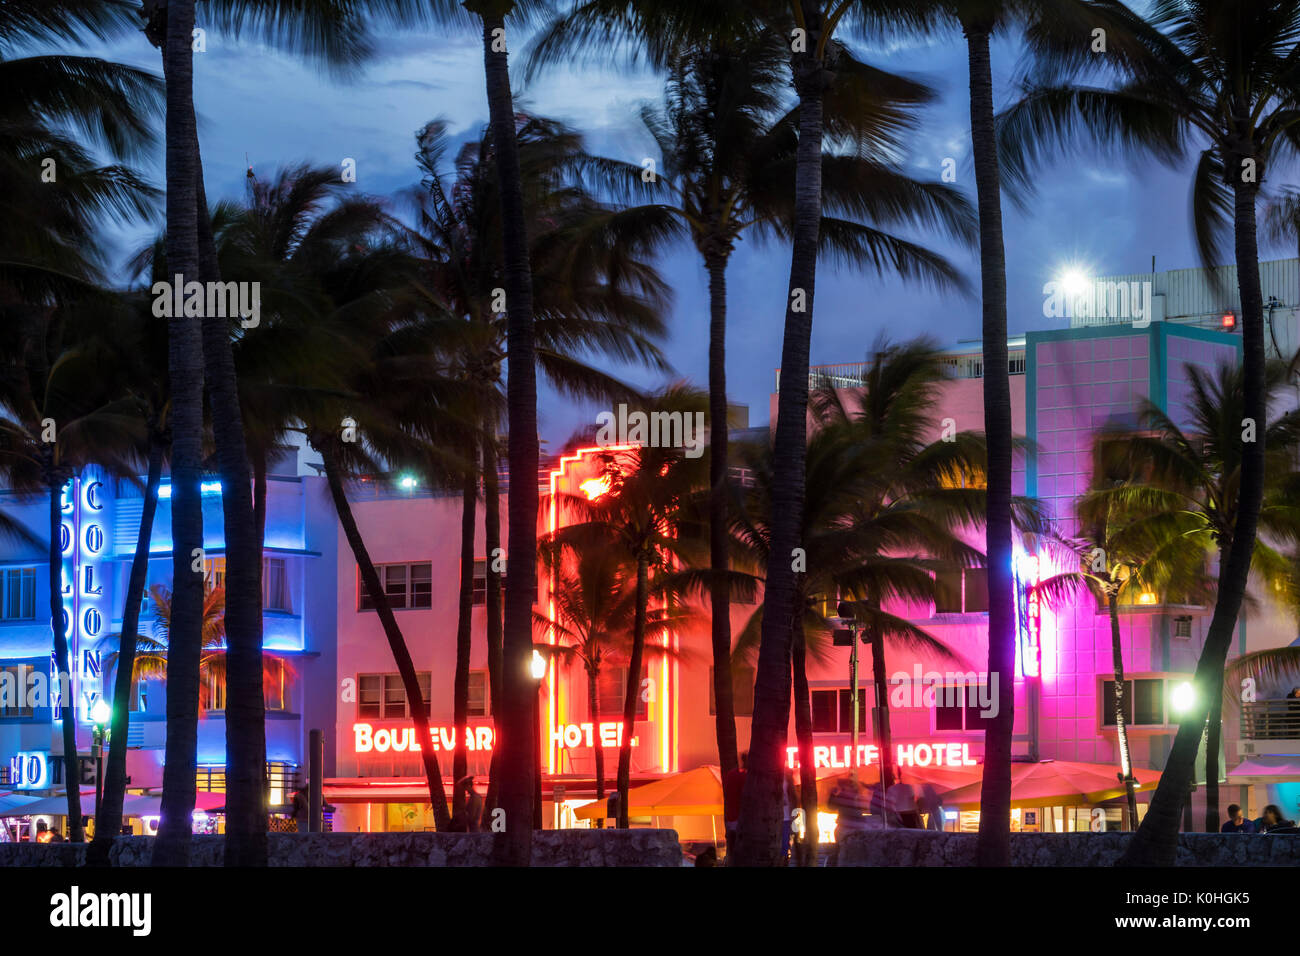 Miami Beach Florida,Ocean Drive,Lummus Park,hôtels,enseignes néon,palmiers,crépuscule,nuit soir Colony Boulevard Starlite,hôtel,FL170430094 Banque D'Images